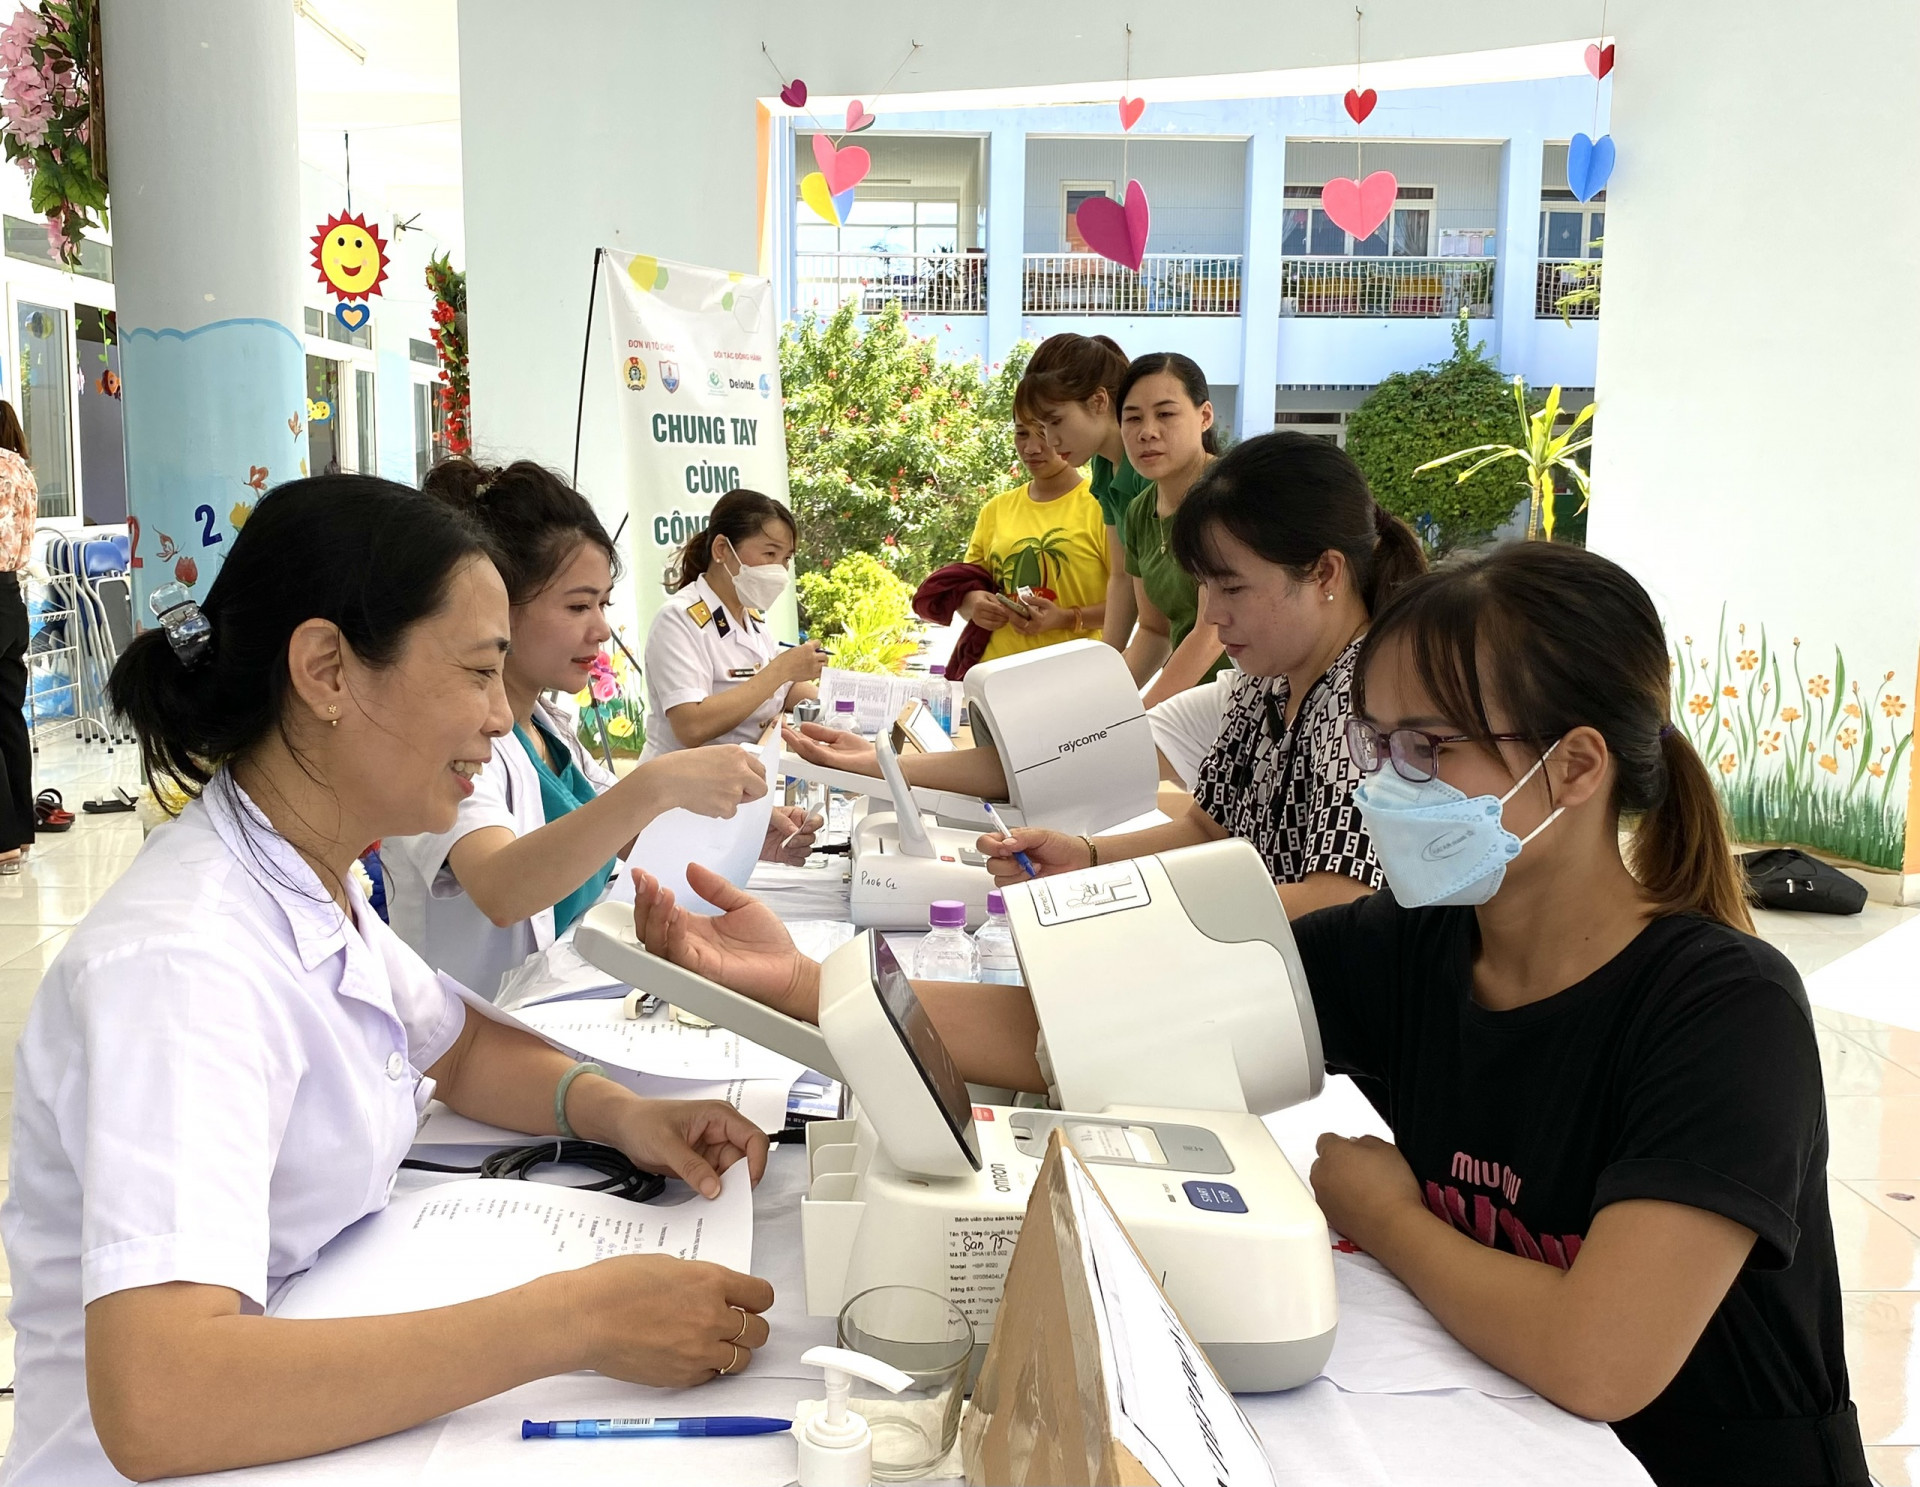 Kiểm tra sức khoẻ cho phụ nữ Khu đô thị căn cứ Cam Ranh